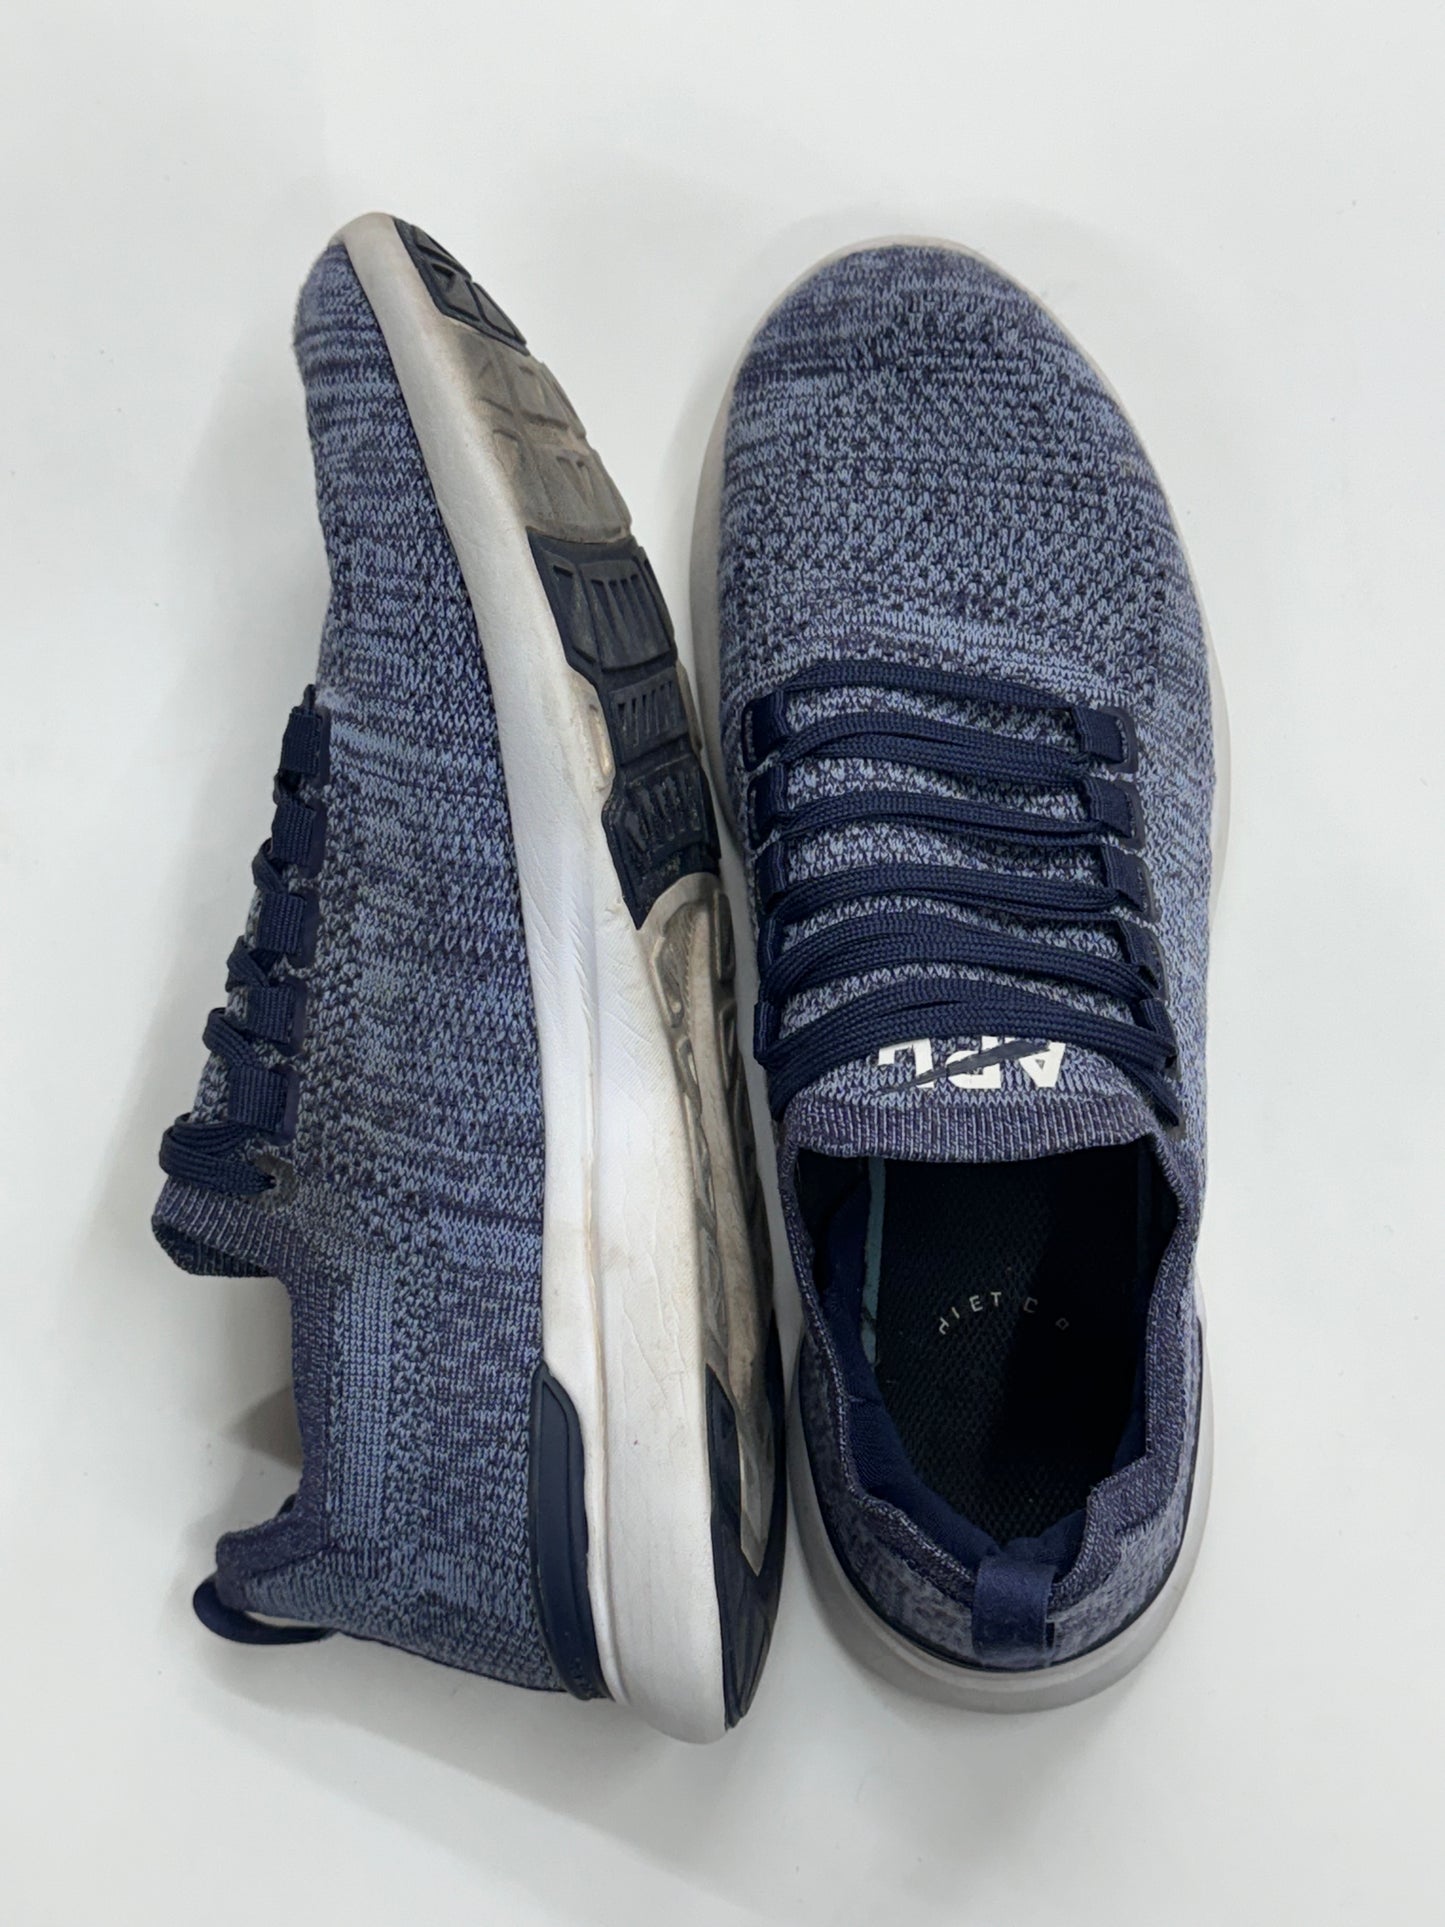 APL Shoes Lace Up Men’s Shoe Blue - Size 9 (US)